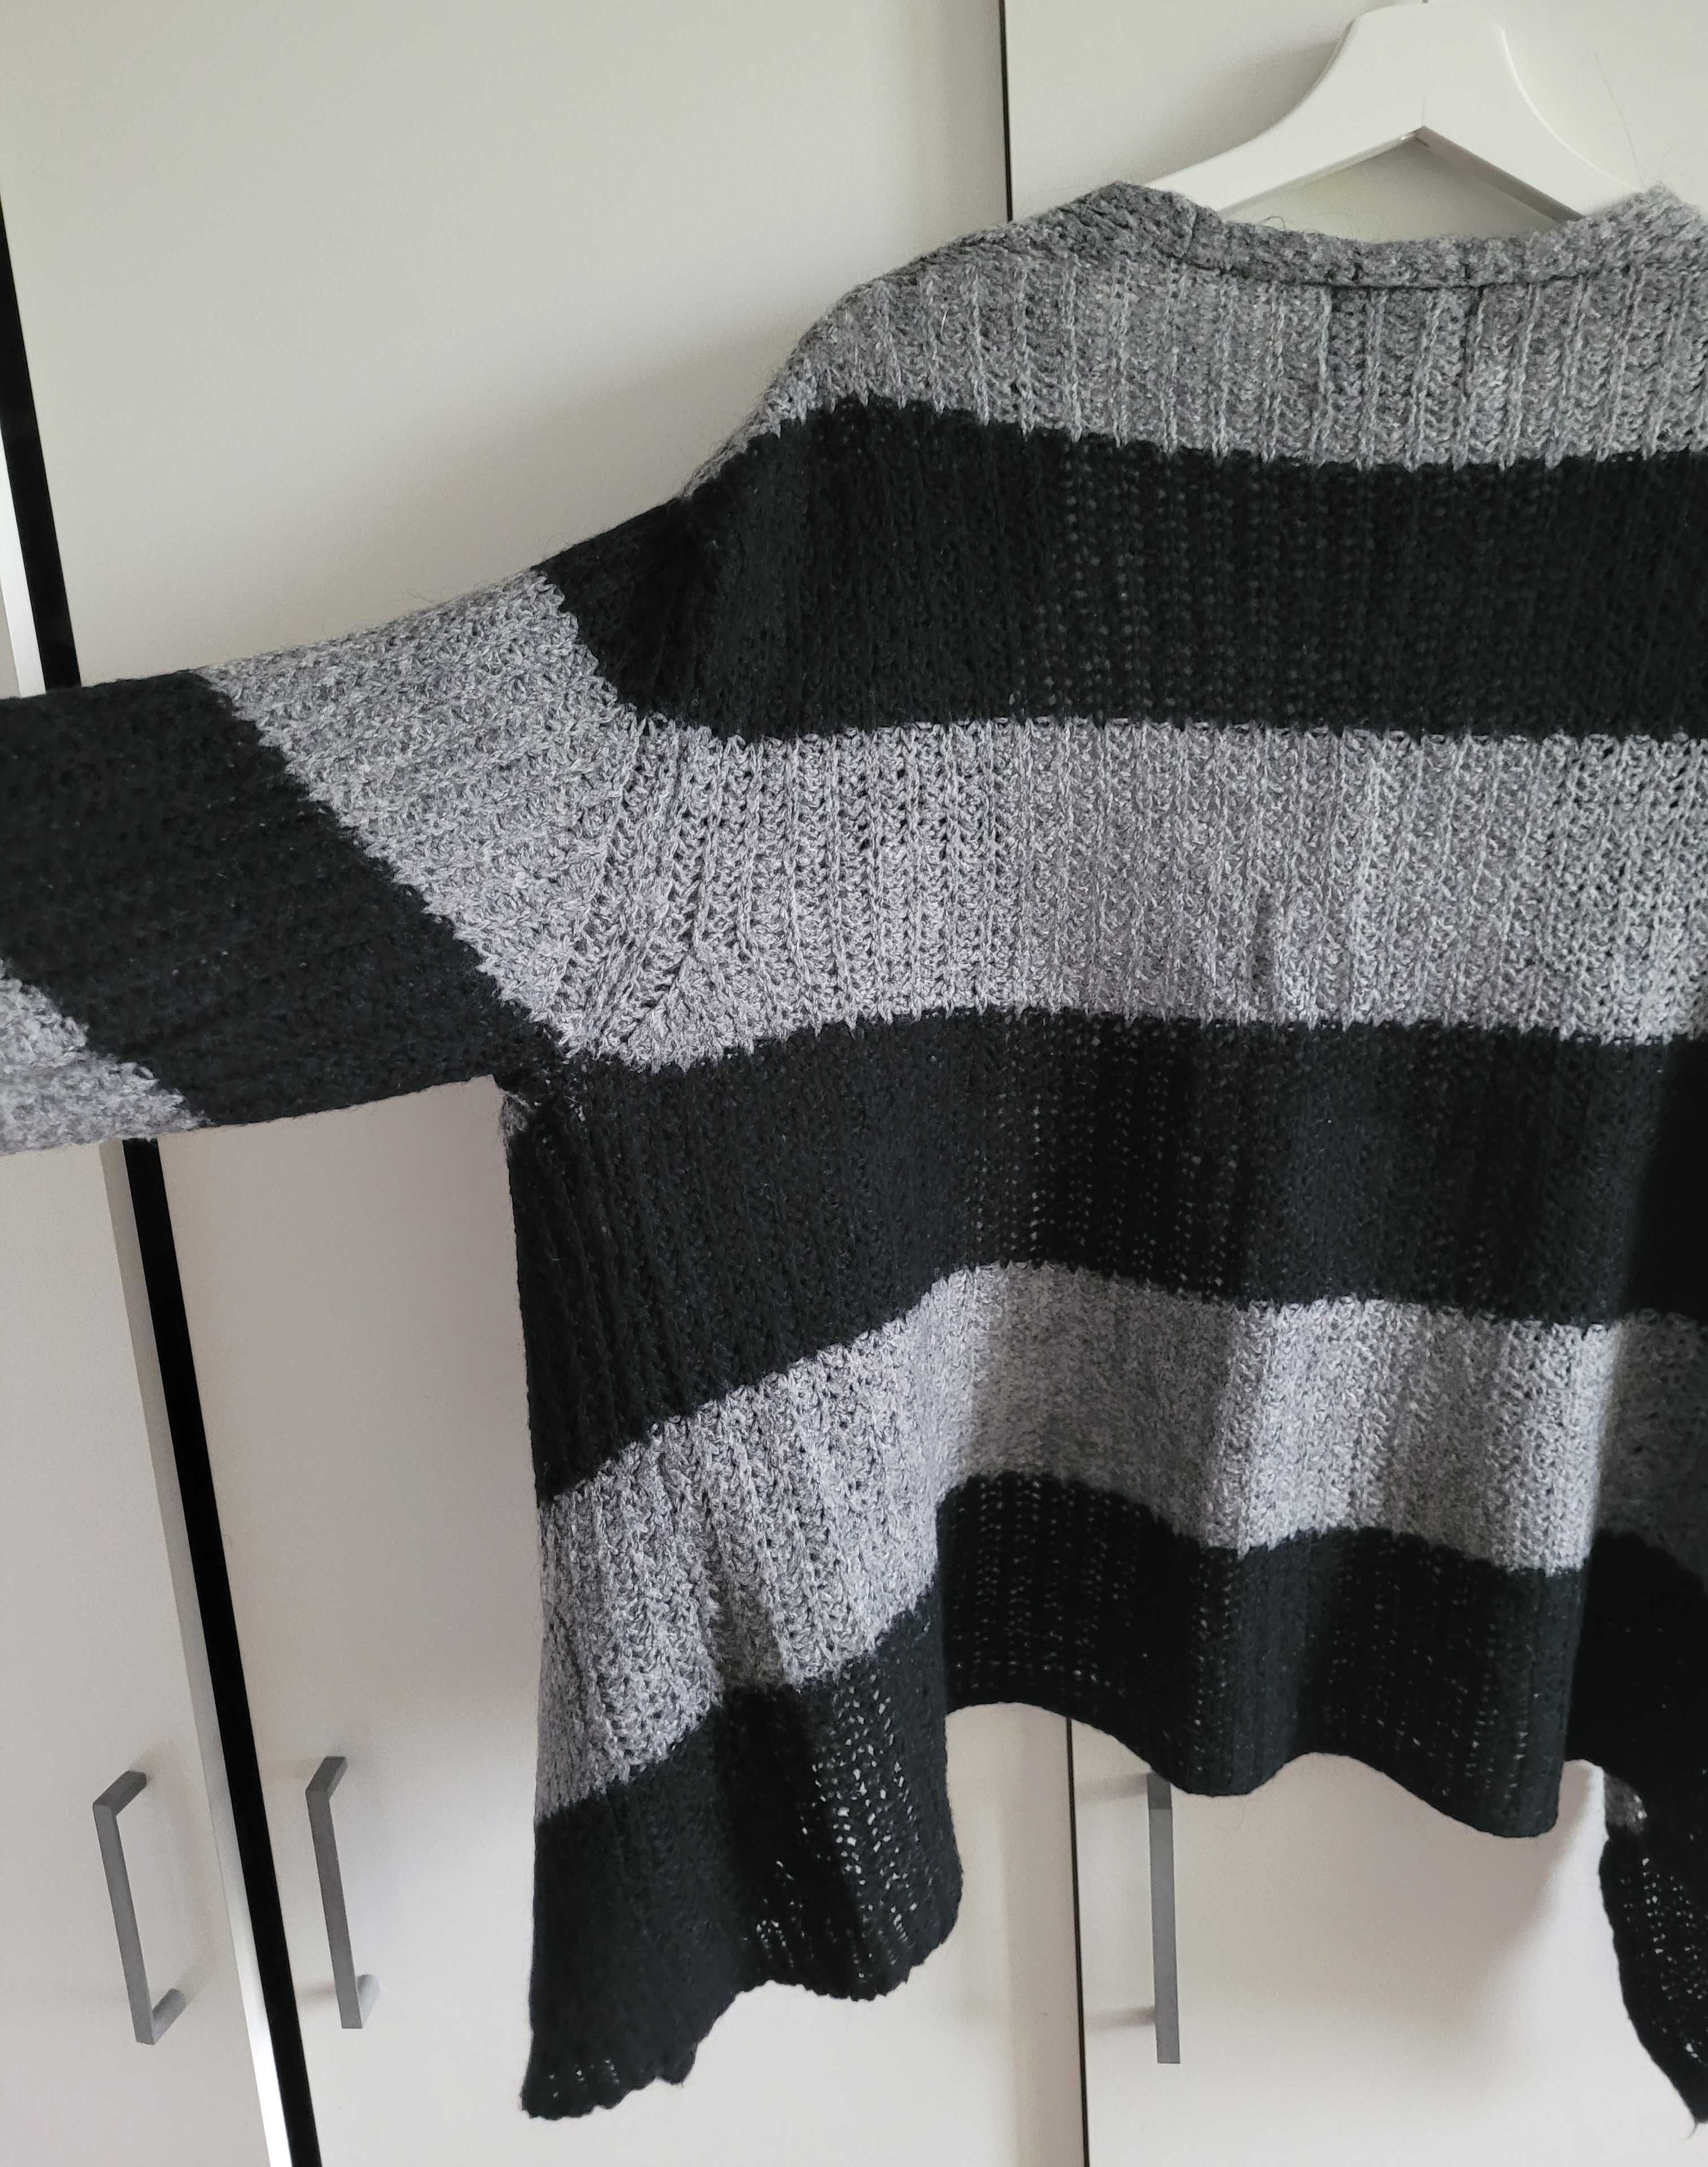 Zara Knit kardigan czarny szary paski wełna narzutka sweter S M L goth